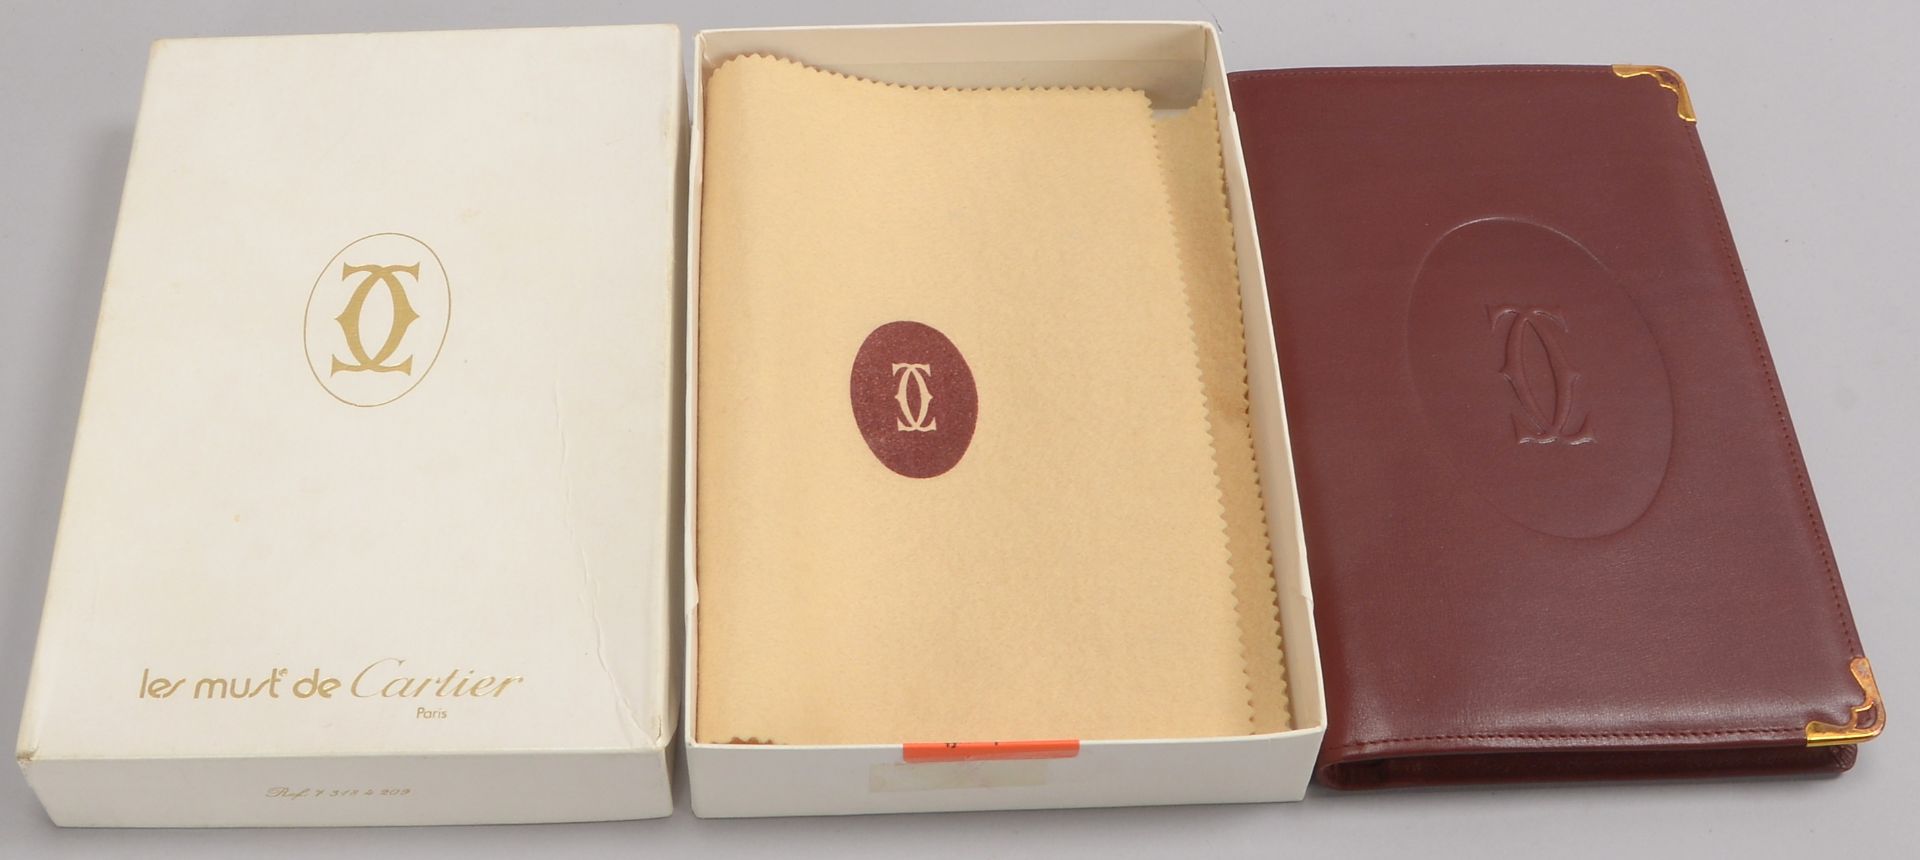 Cartier, Adressbuch, Einband burgund-rotes Rindsleder, im original Karton; Ma&szlig;e 22 x 14 cm - Image 3 of 3